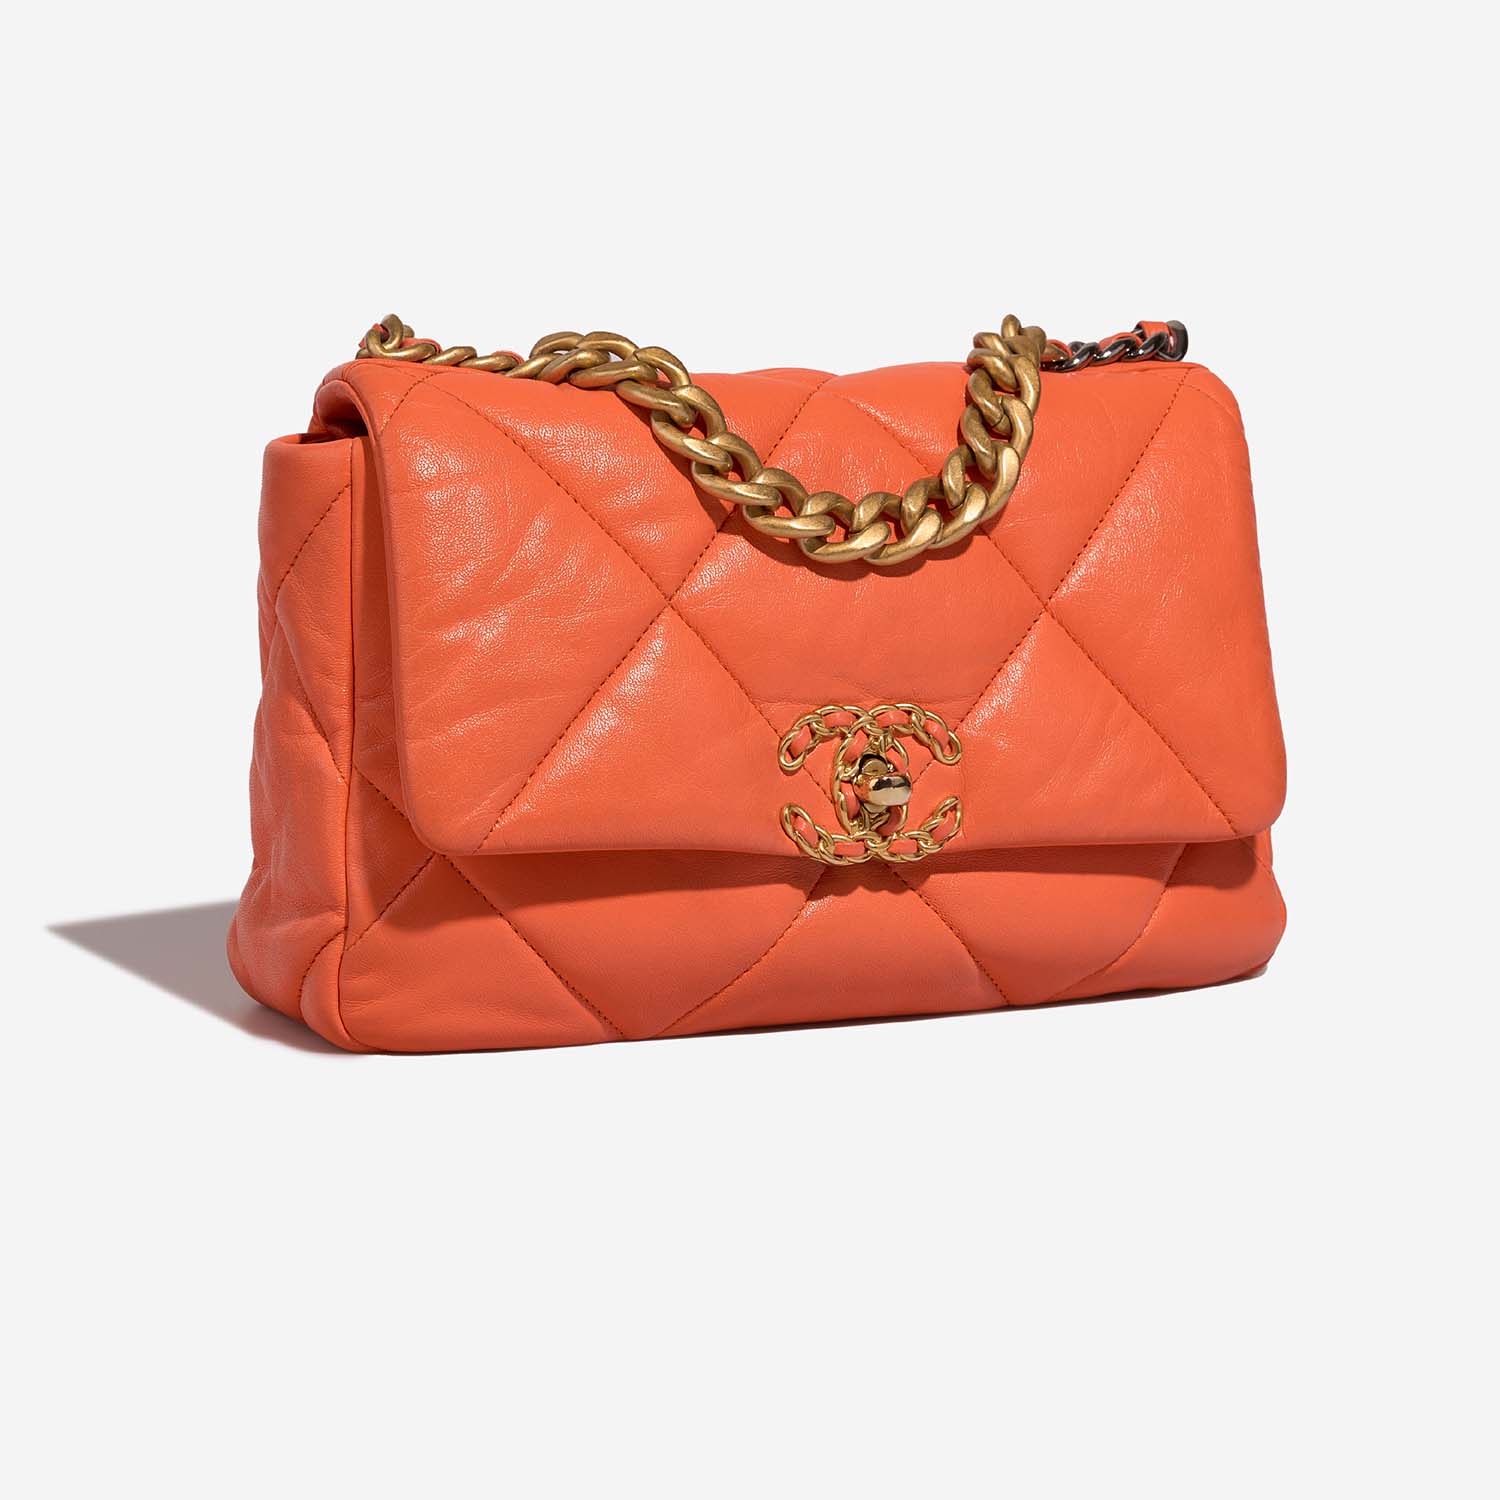 Chanel 19 FlapBag Orange Side Front | Verkaufen Sie Ihre Designer-Tasche auf Saclab.com